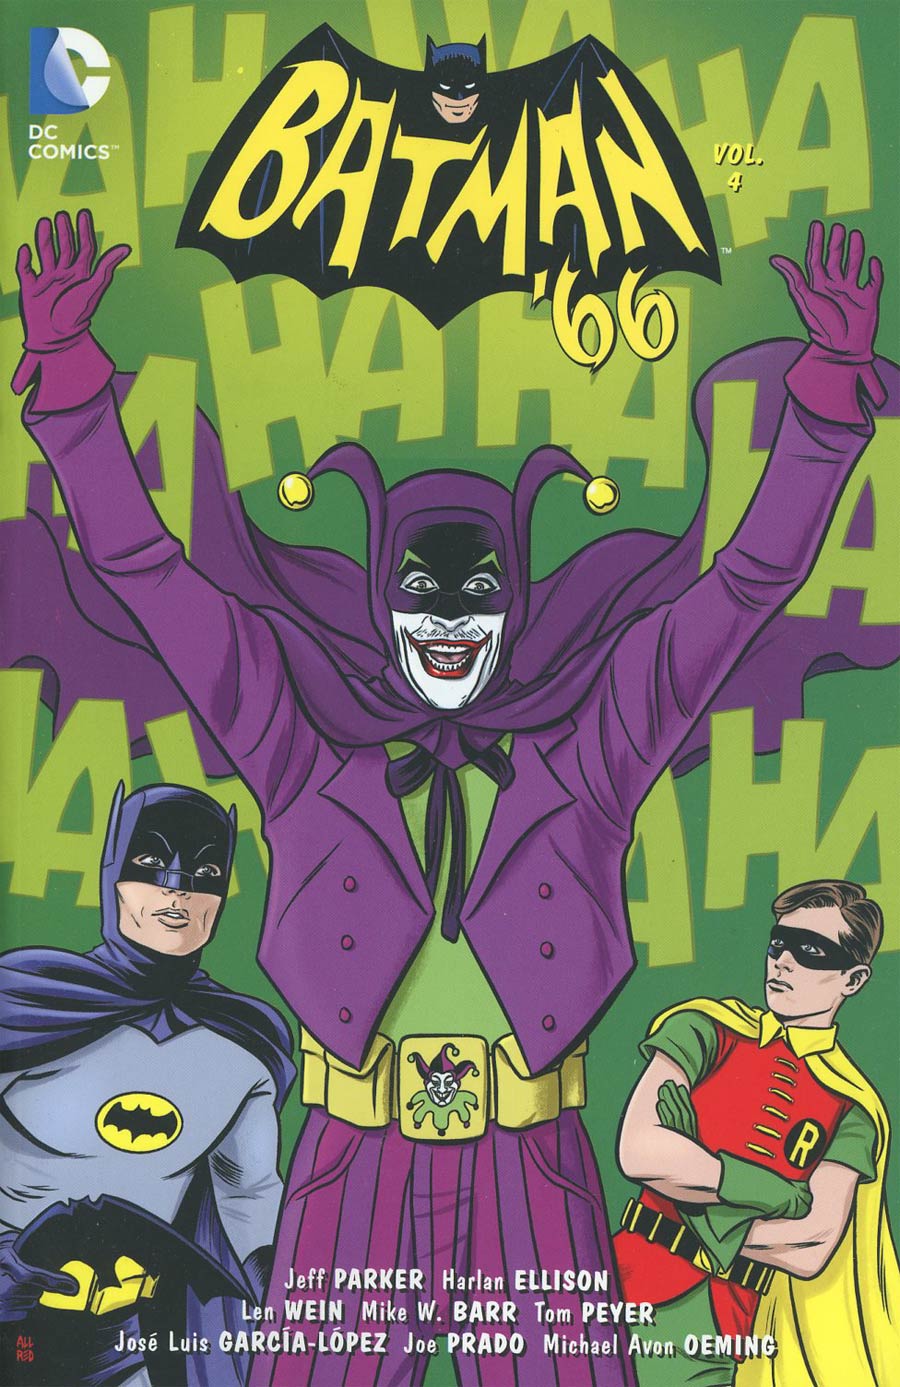 Batman 66 Vol 4 TP